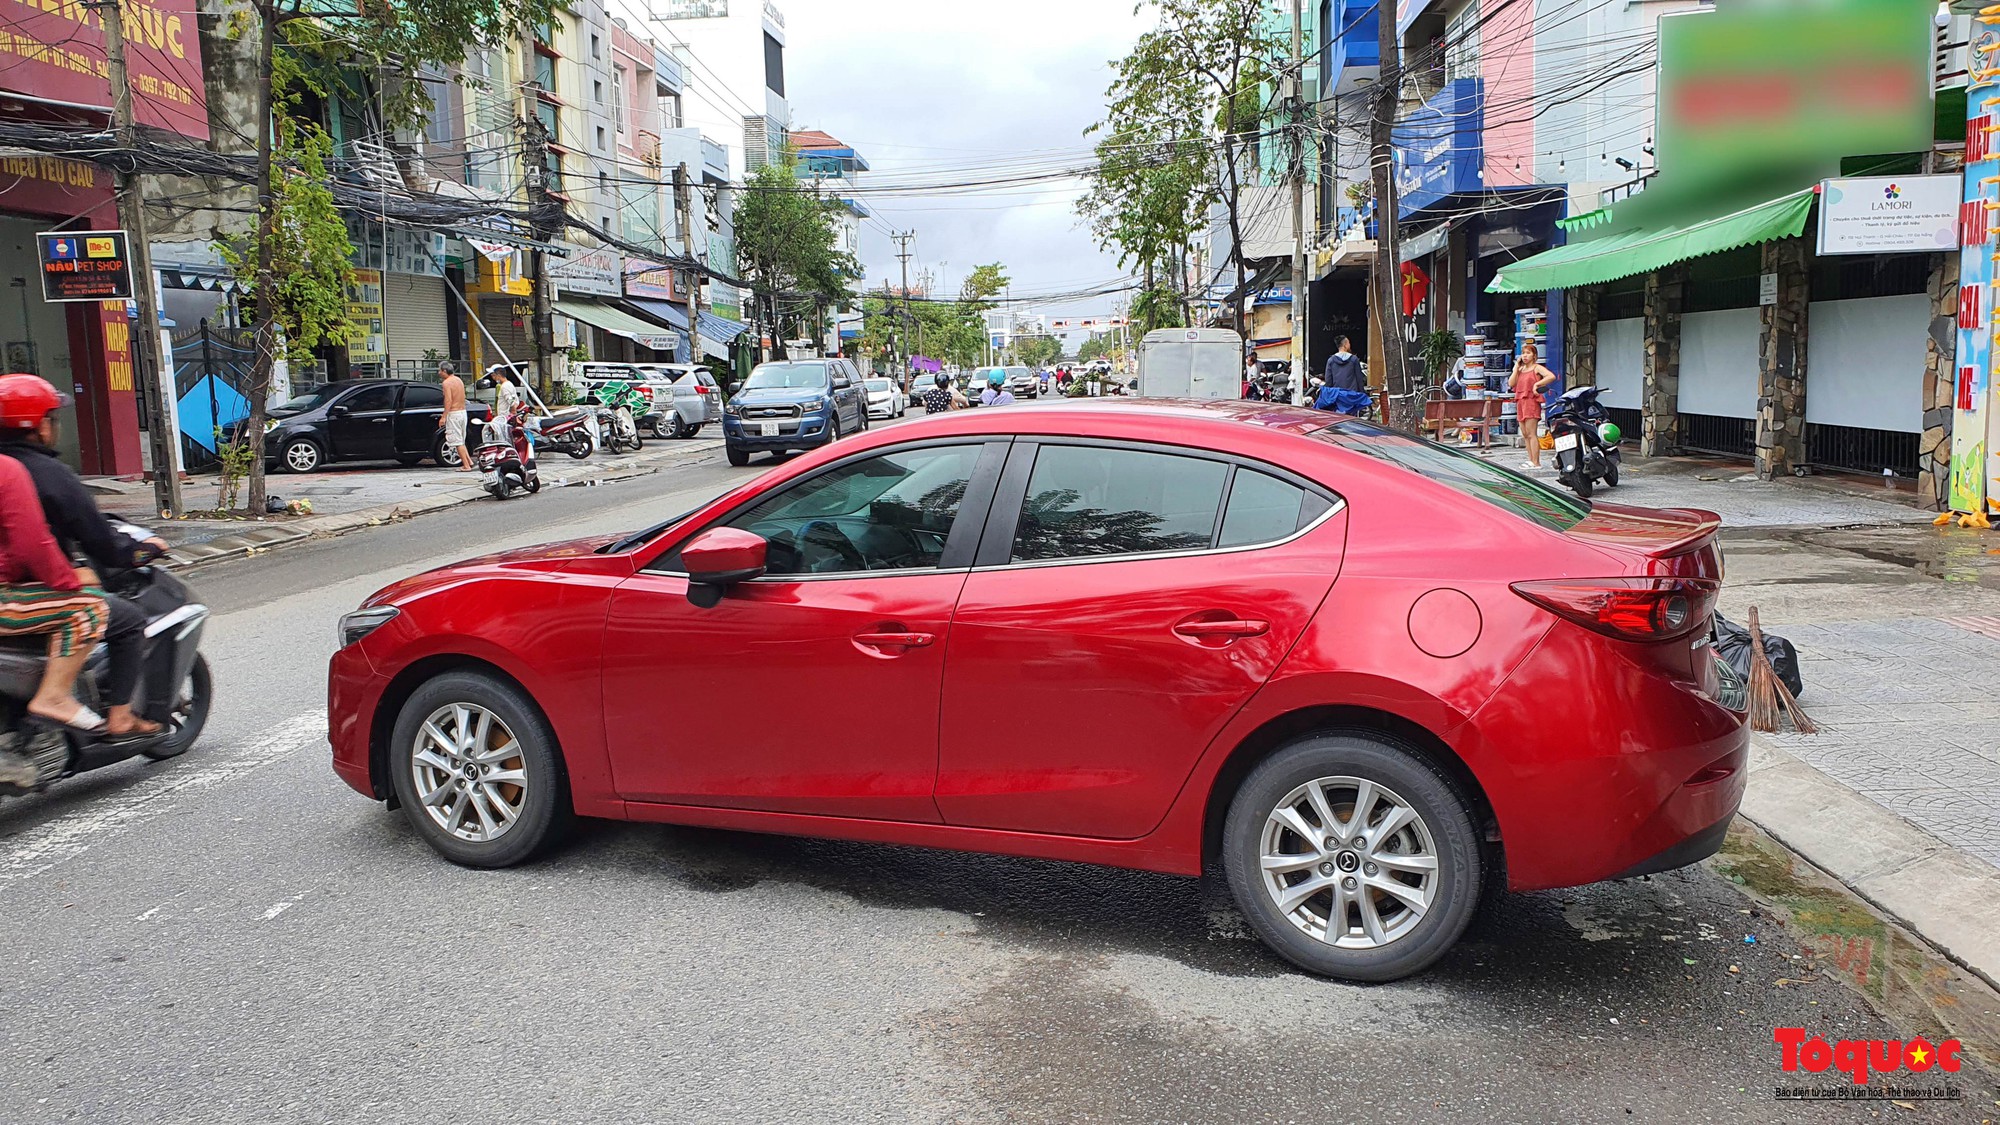 Hình ảnh xe ô tô chết máy nằm la liệt trên phố ở Đà Nẵng - Ảnh 9.